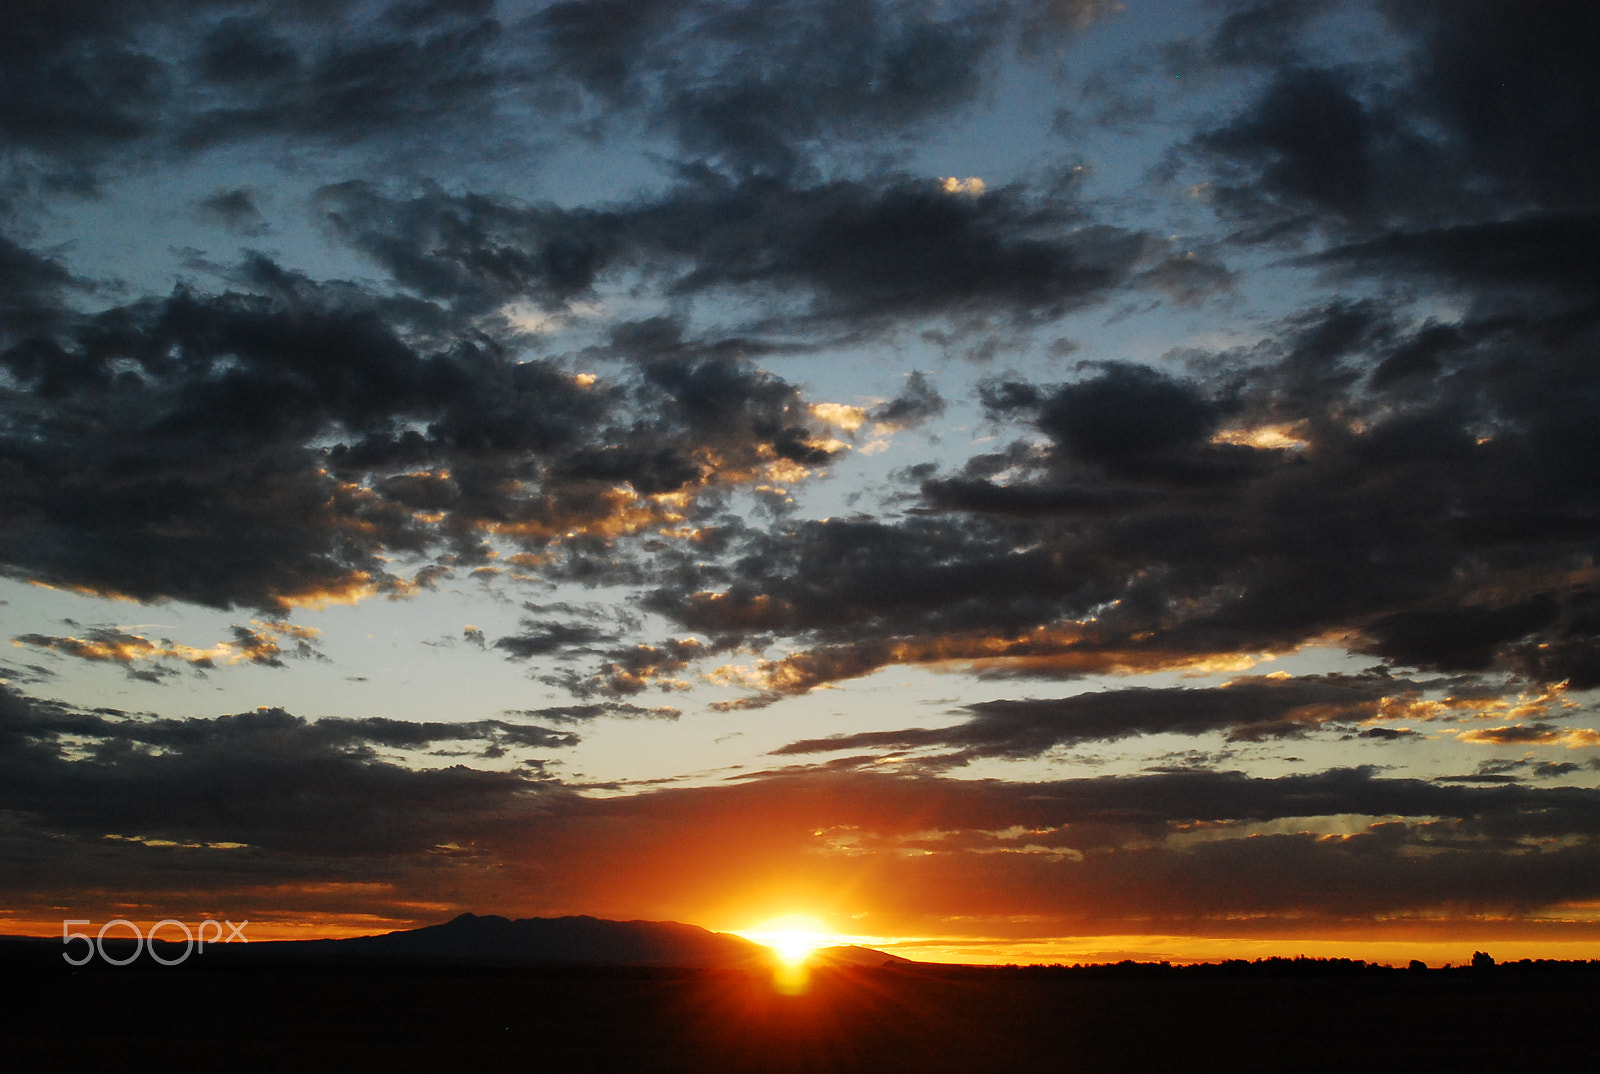 Nikon D80 + AF Zoom-Nikkor 28-80mm f/3.3-5.6G sample photo. Colorado sunset photography